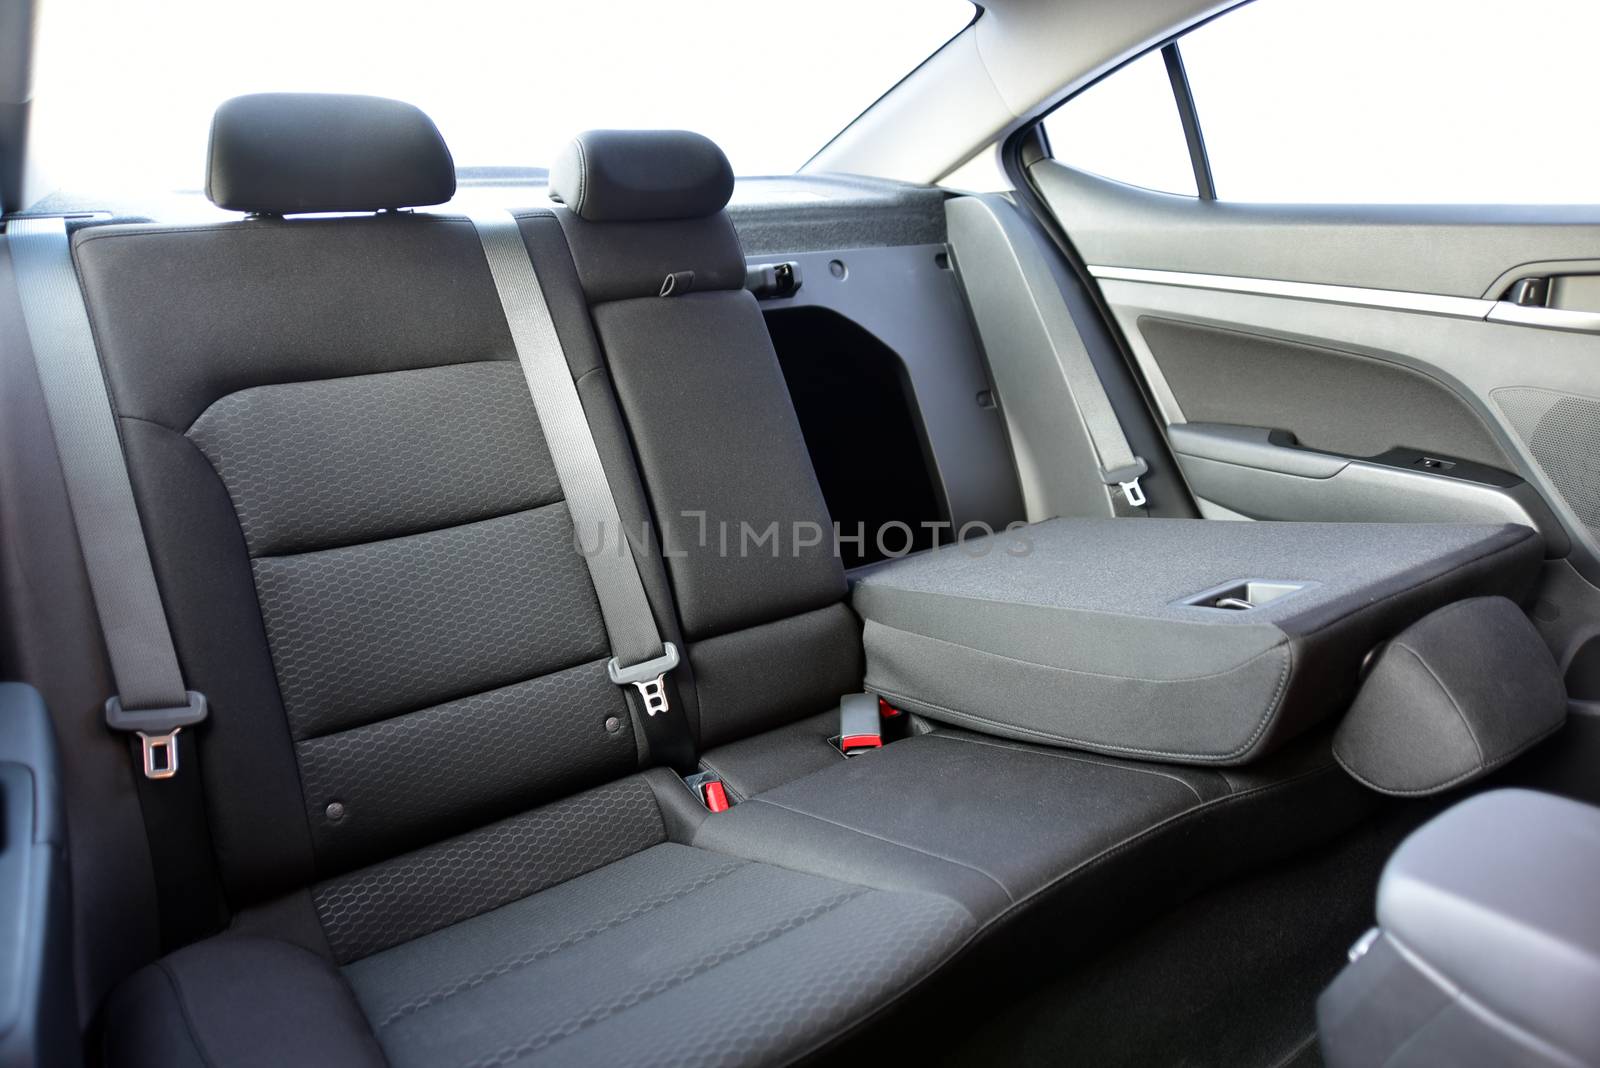 rear seatback folded in passenger car by aselsa